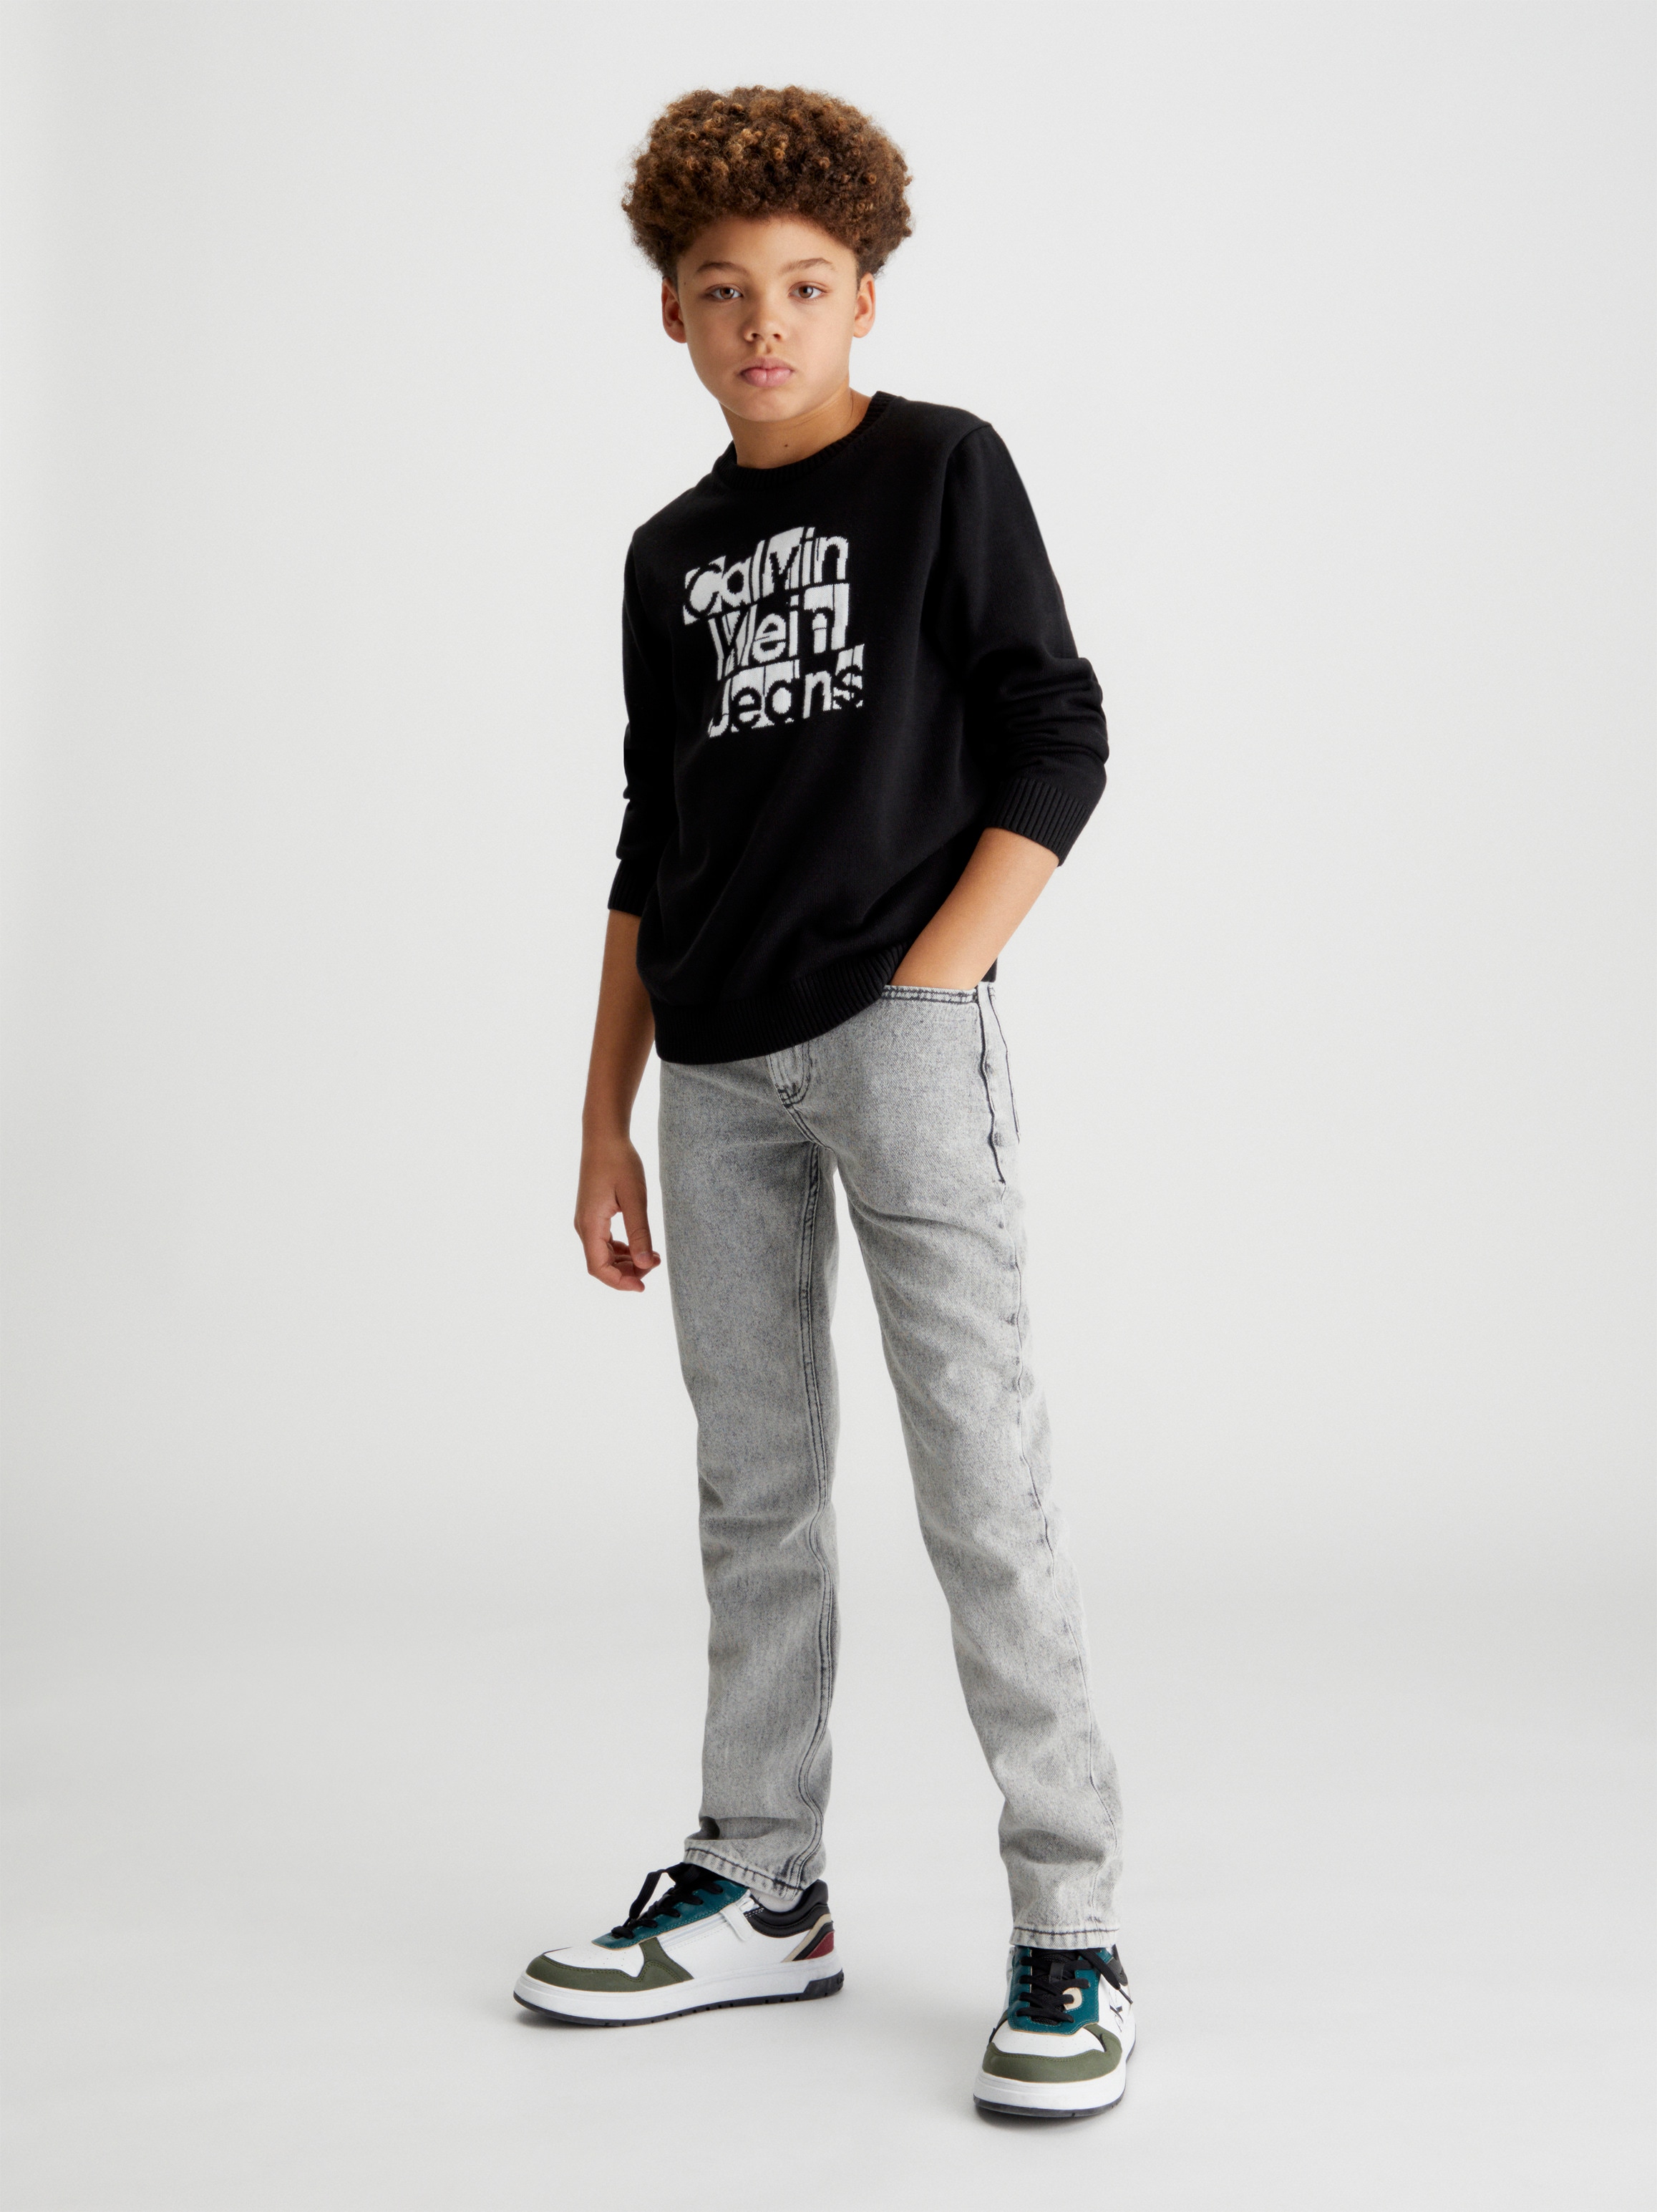 bestellen Kinder online Klein SWEATER«, »INST. Rundhalspullover GRID bis BAUR Jahre Calvin 16 für GRAPHIC Jeans |